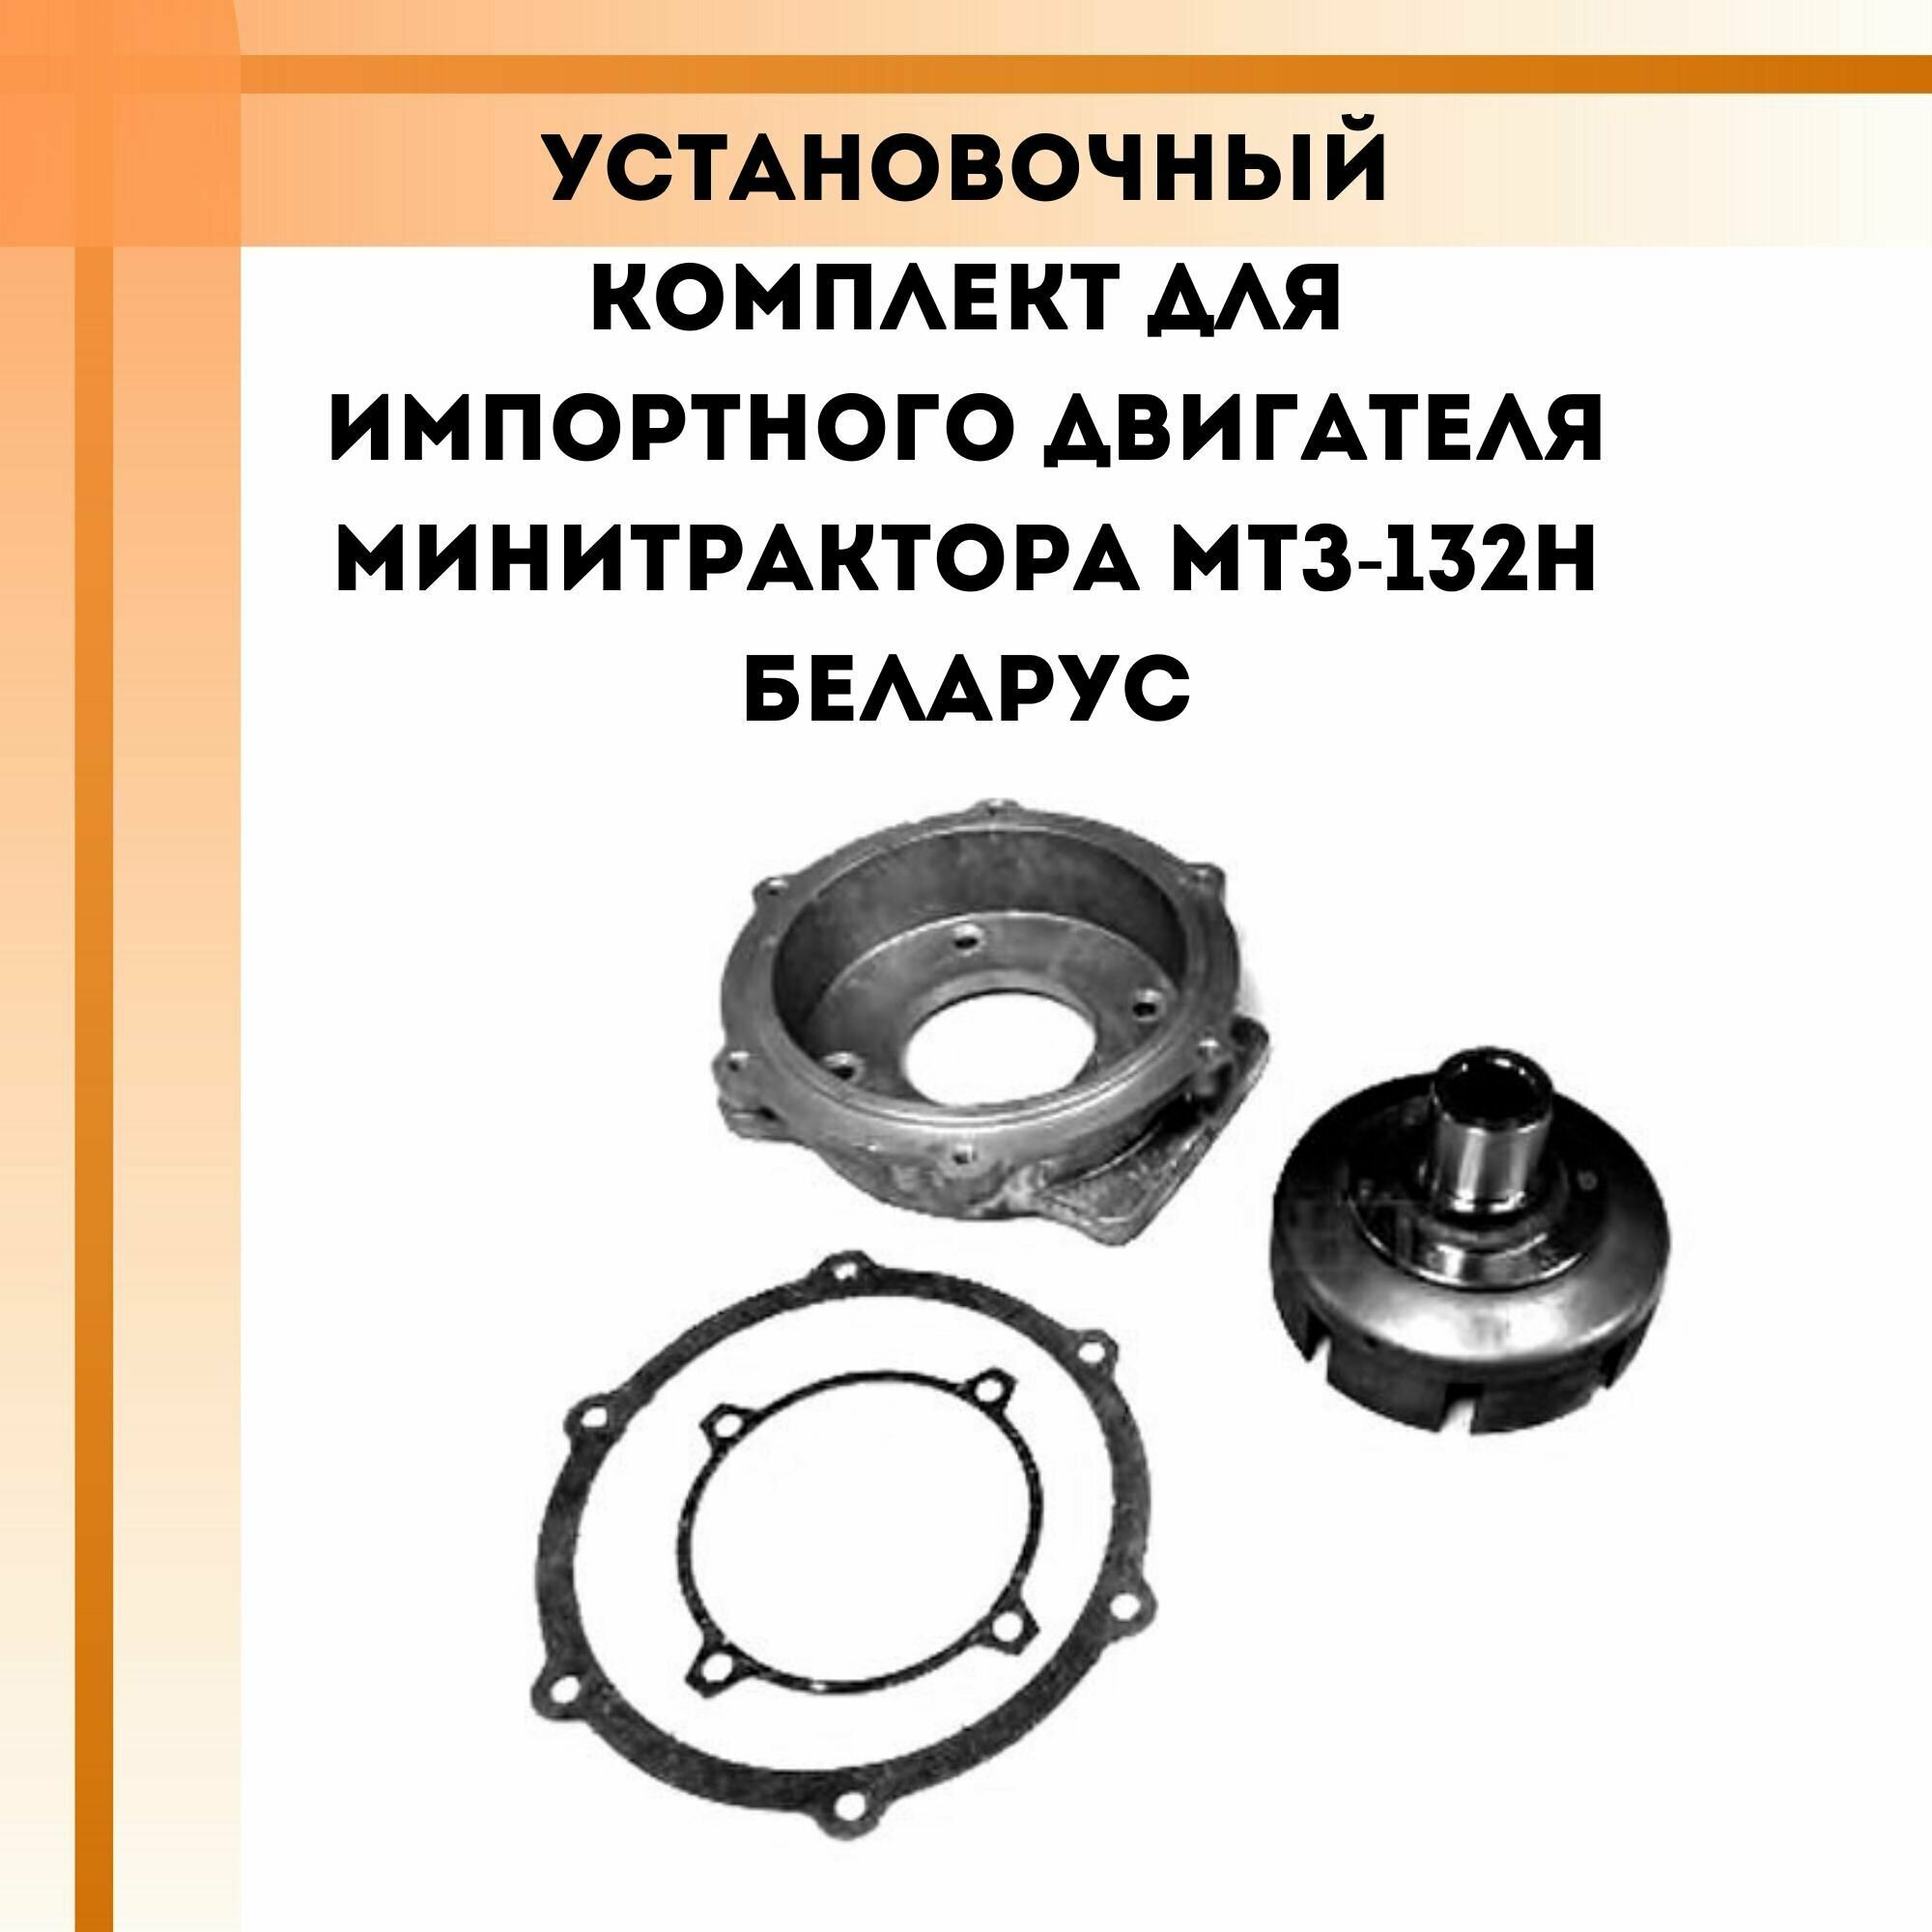 Установочный комплект для импортного двигателя минитрактора МТЗ-132Н Беларус